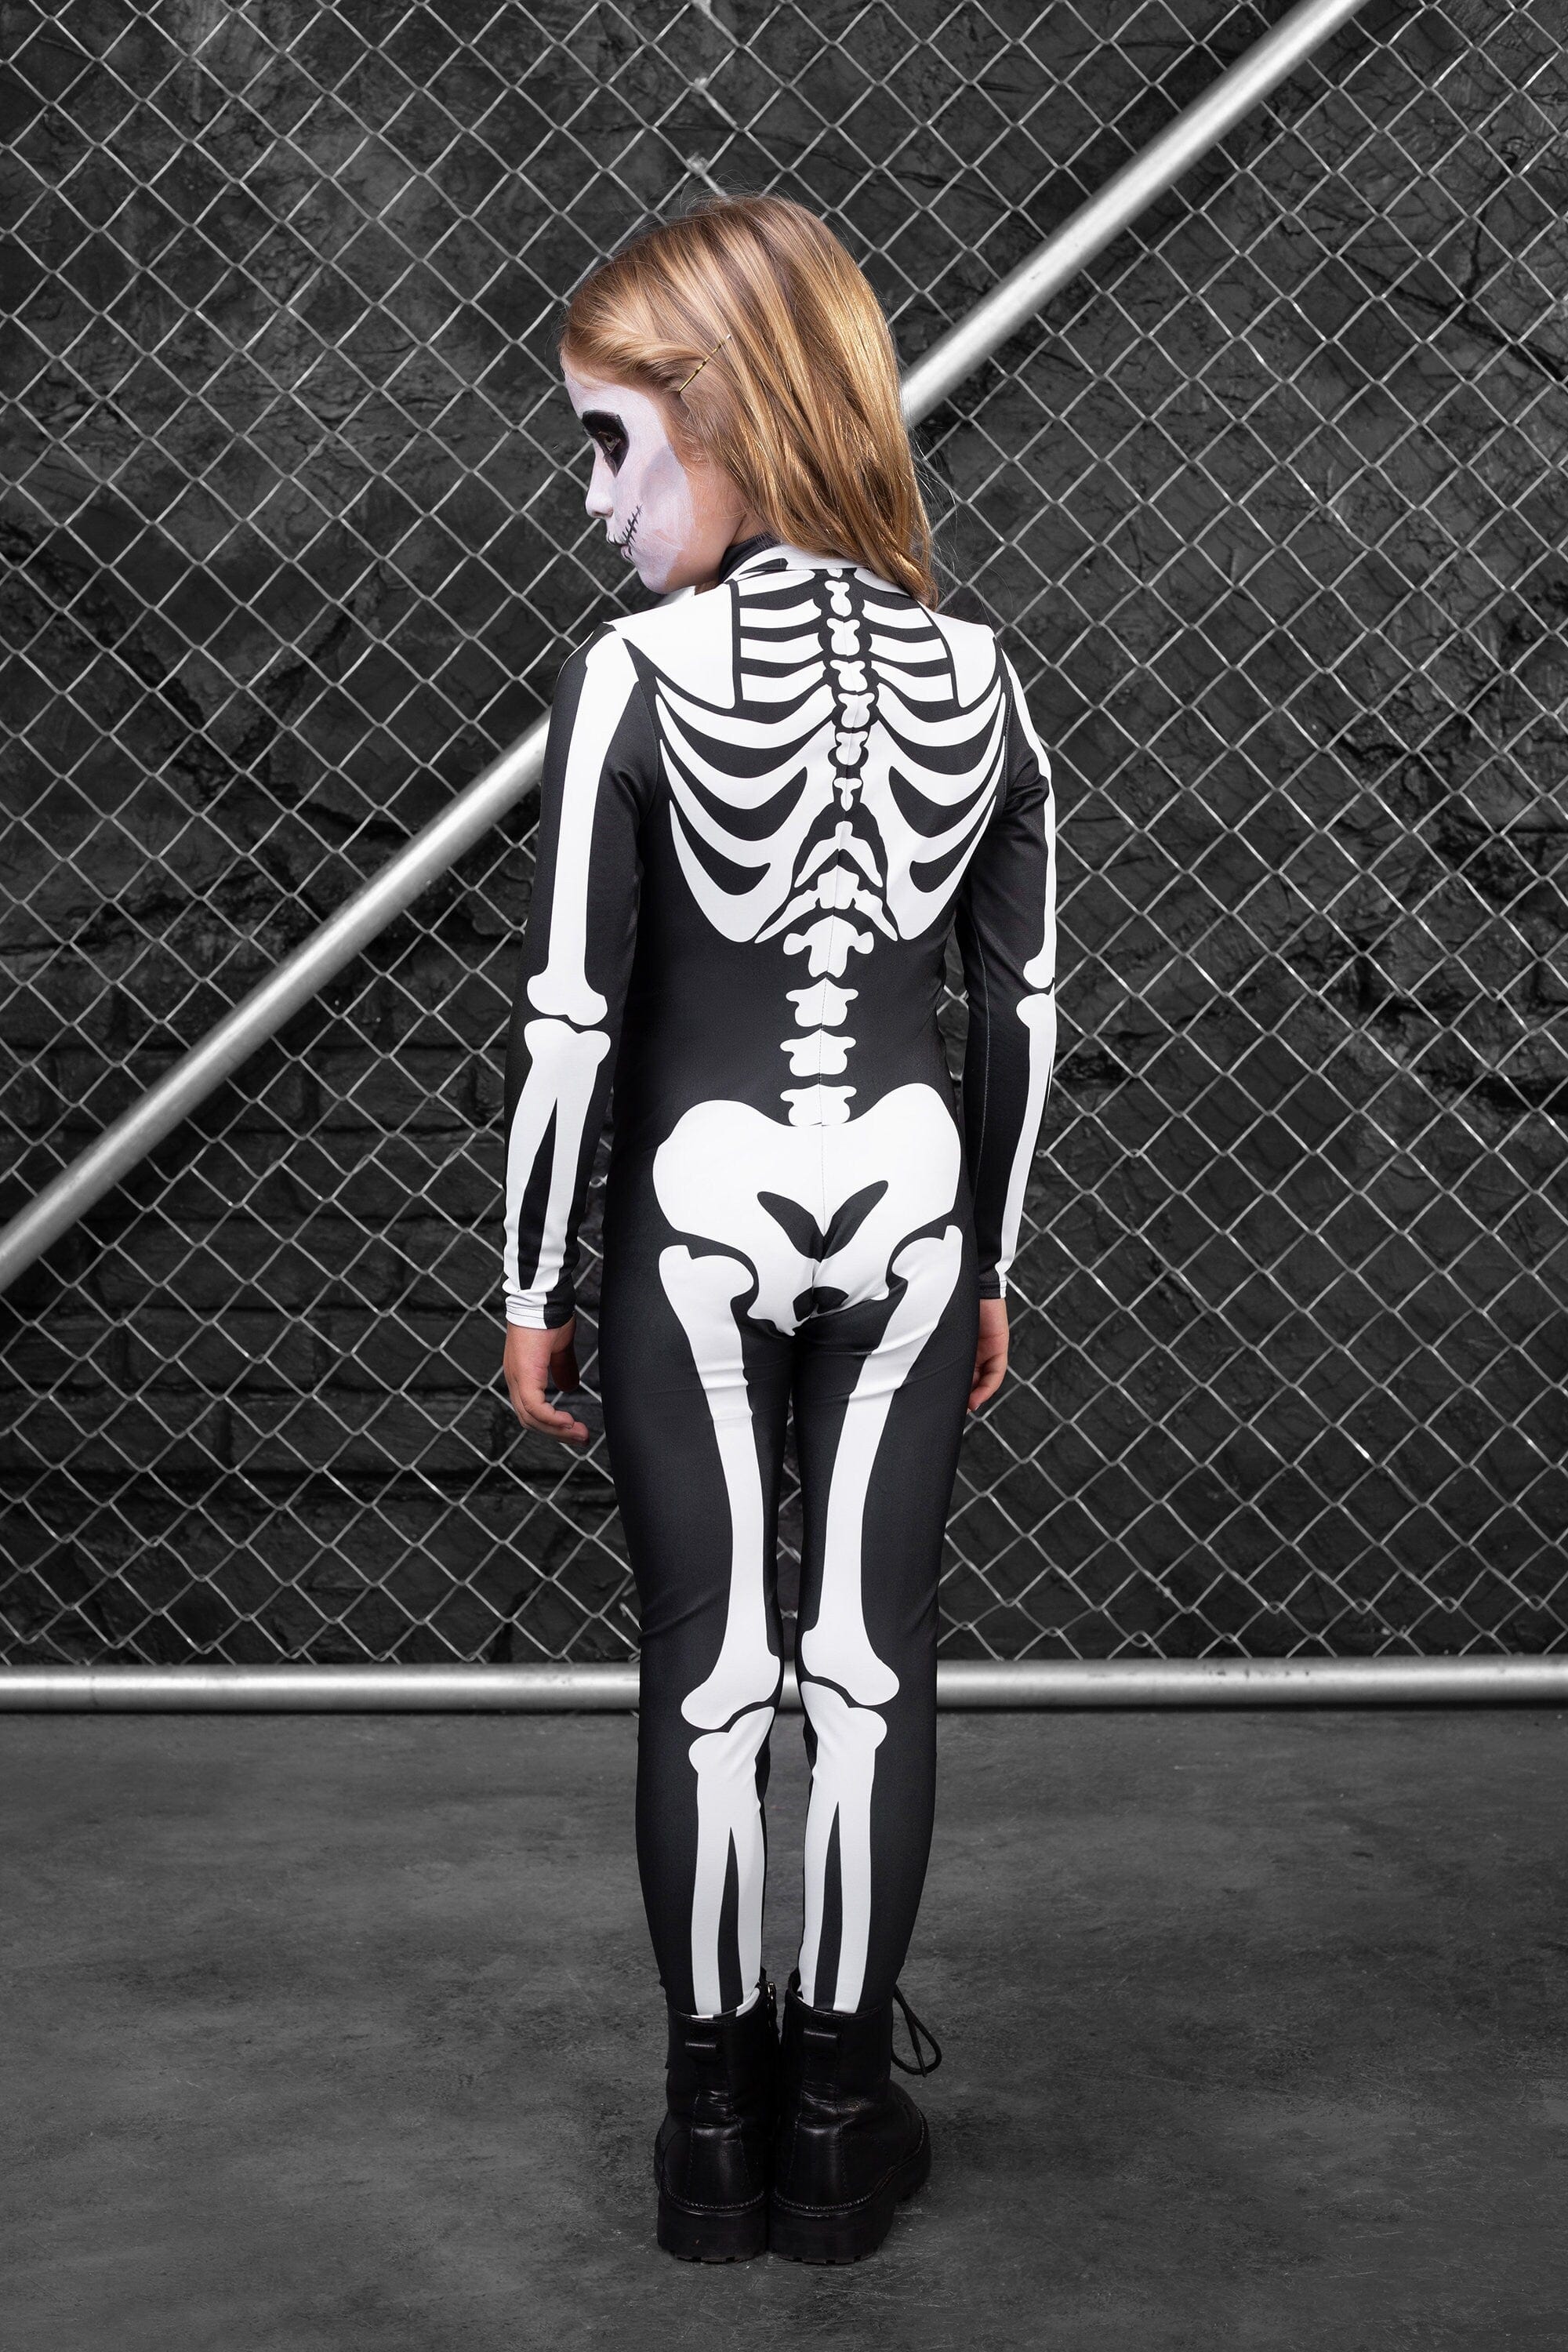 Girl's Bossy Skeleton Costume